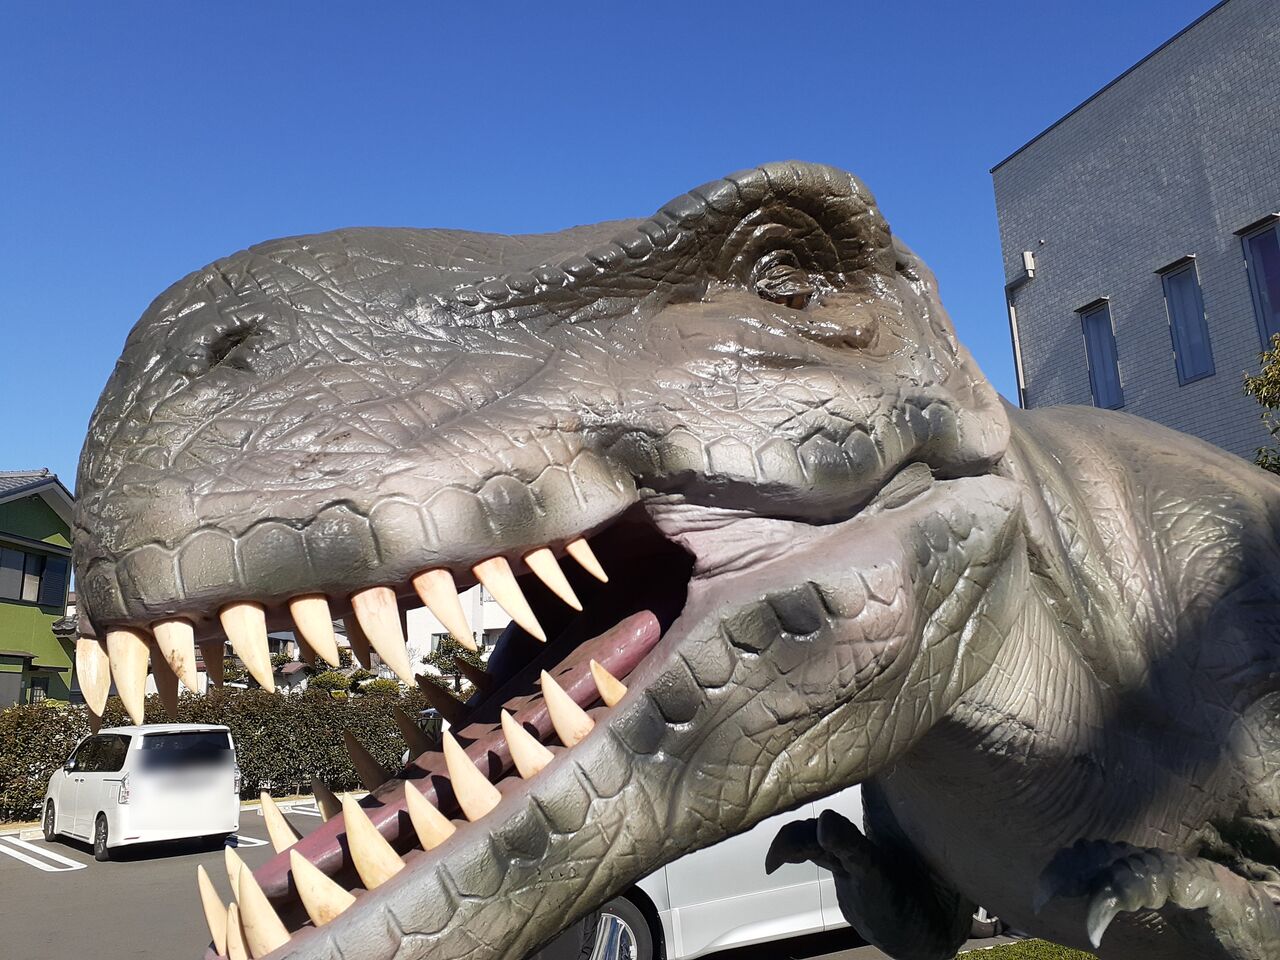 恐竜と触れ合う無料のイベント ジュラシックサーカス 1 150の焼津